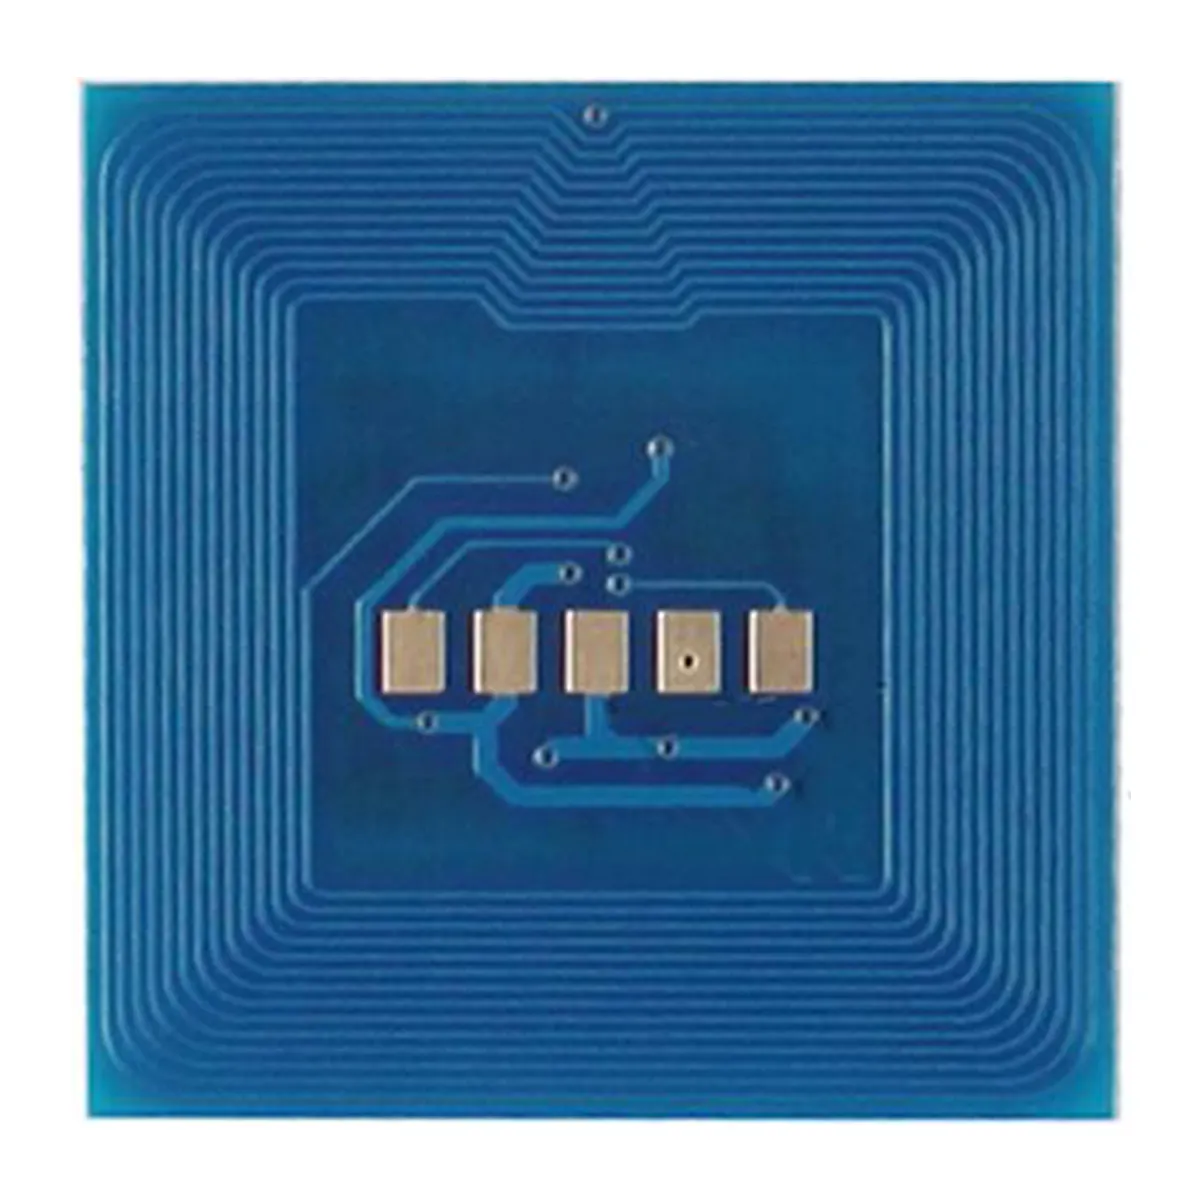 Chip Barcode Drucker chip für Fuji Xerox Docucolor-700 chip OEM laser reset